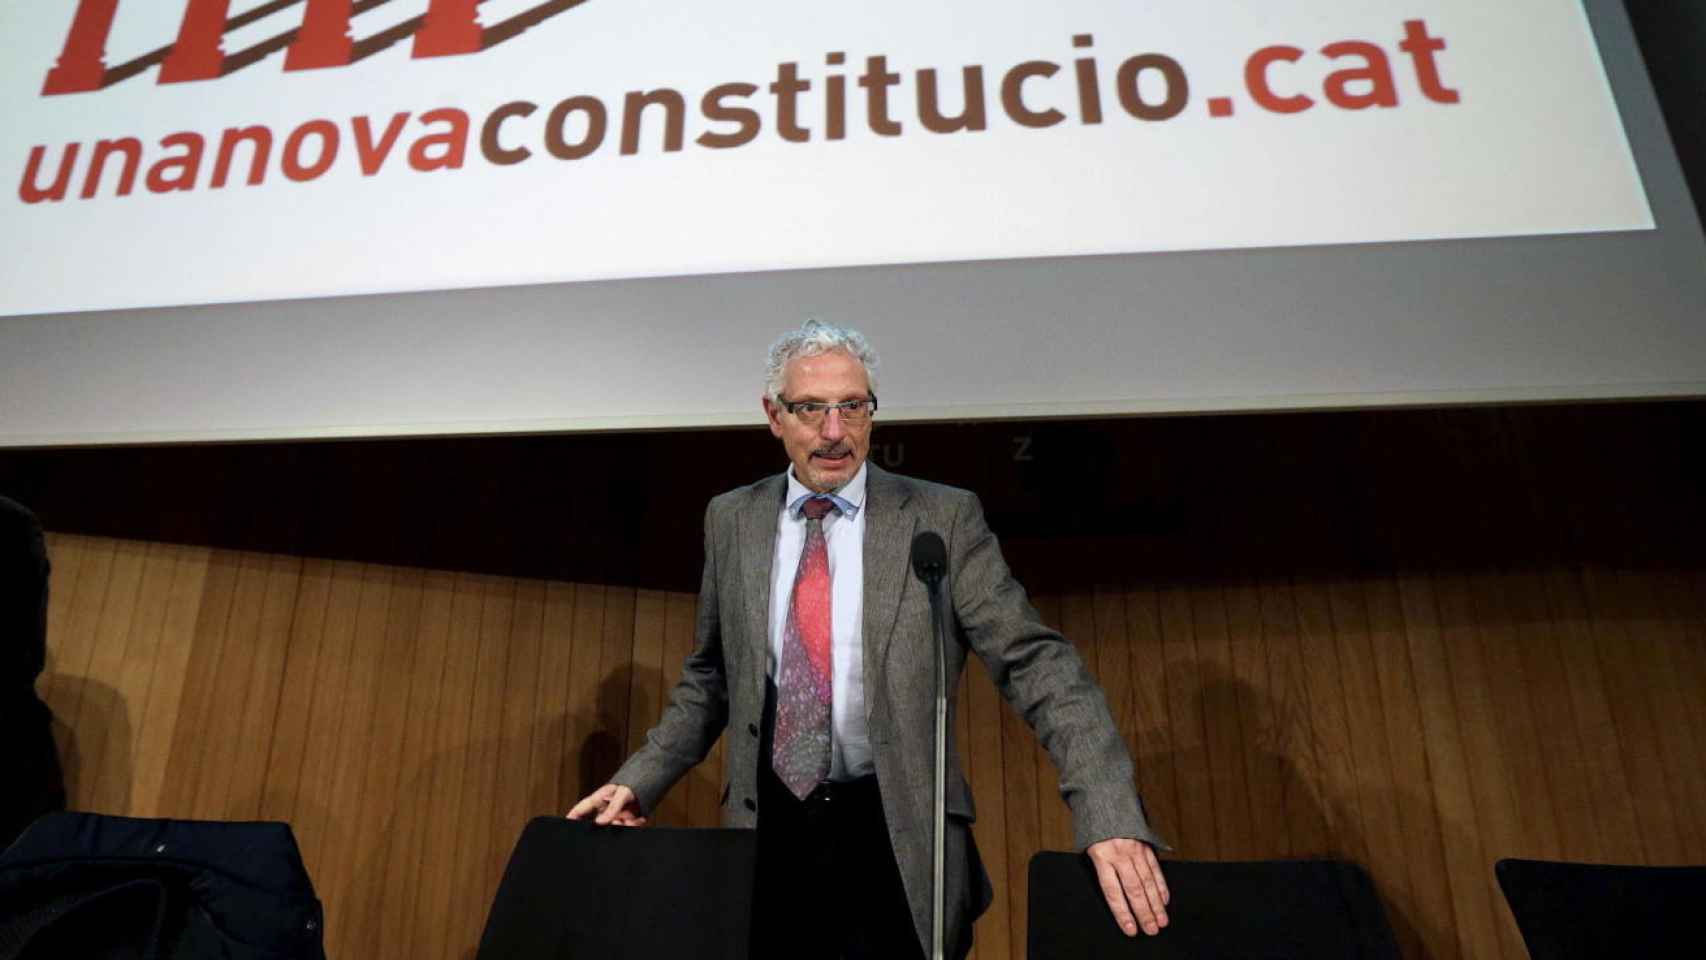 Santiago Vidal, en la rueda de prensa en que presentó la constitución catalana en 2015.